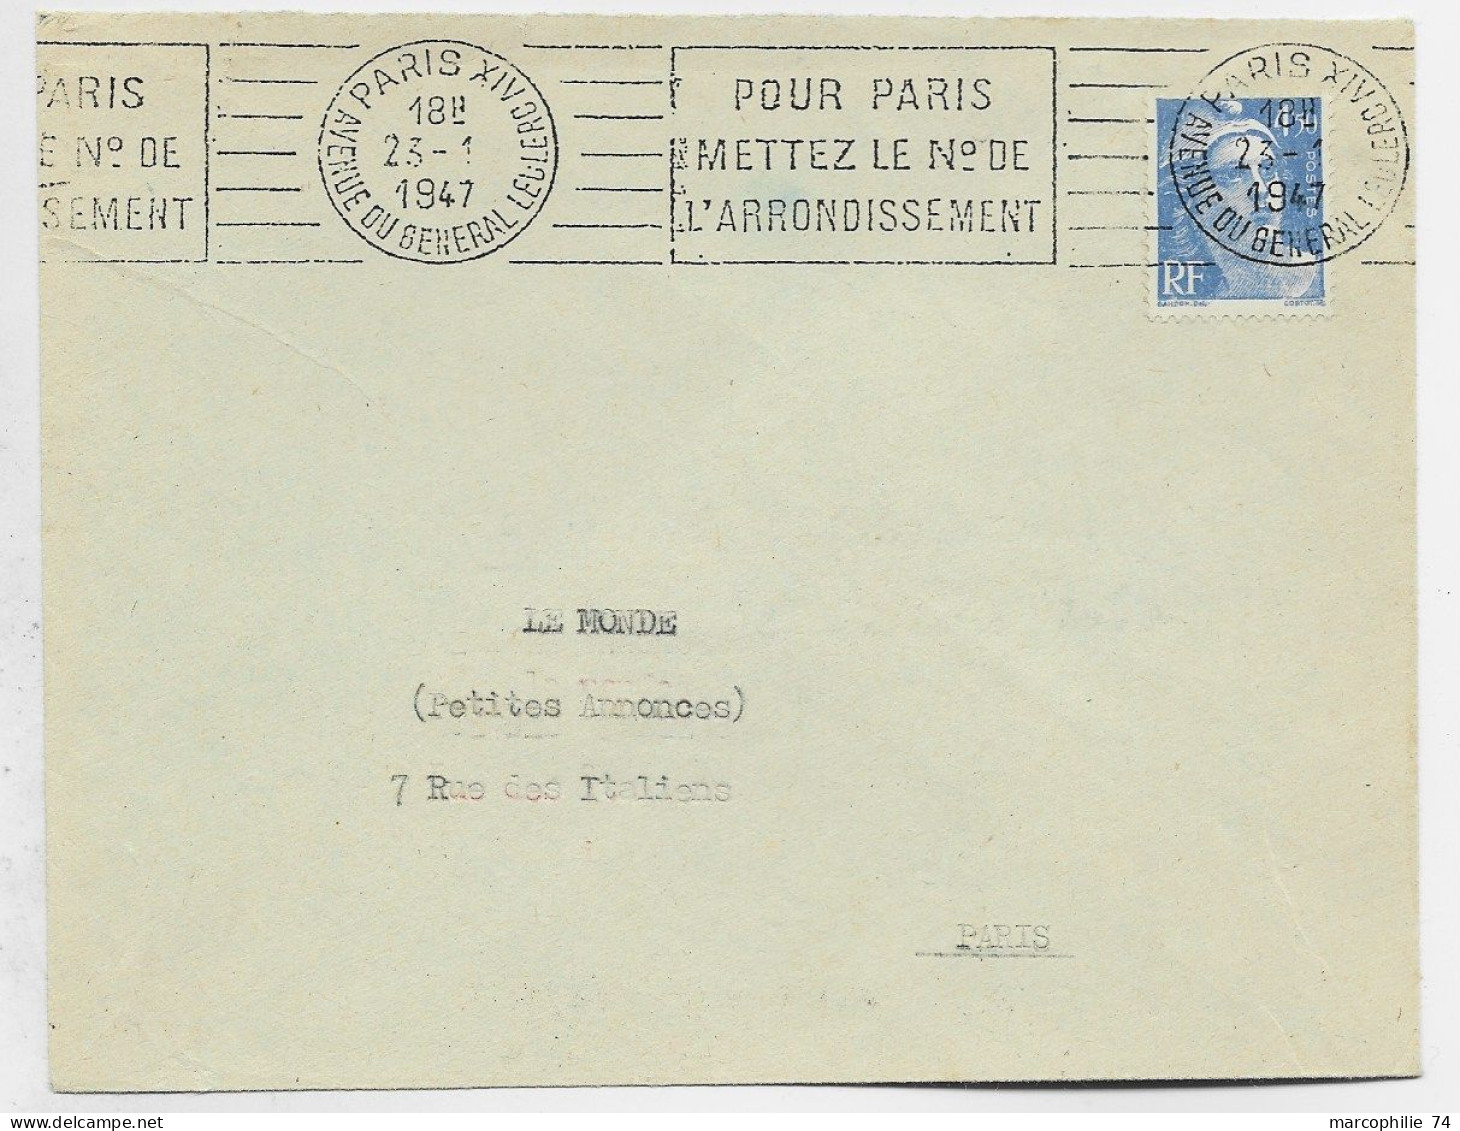 GANDON 4FR50 SEUL LETTRE MANQUE UN RABAT  MEC PARIS XIV 23.1.1947 1ER JOUR DU TIMBRE - 1945-54 Marianne (Gandon)